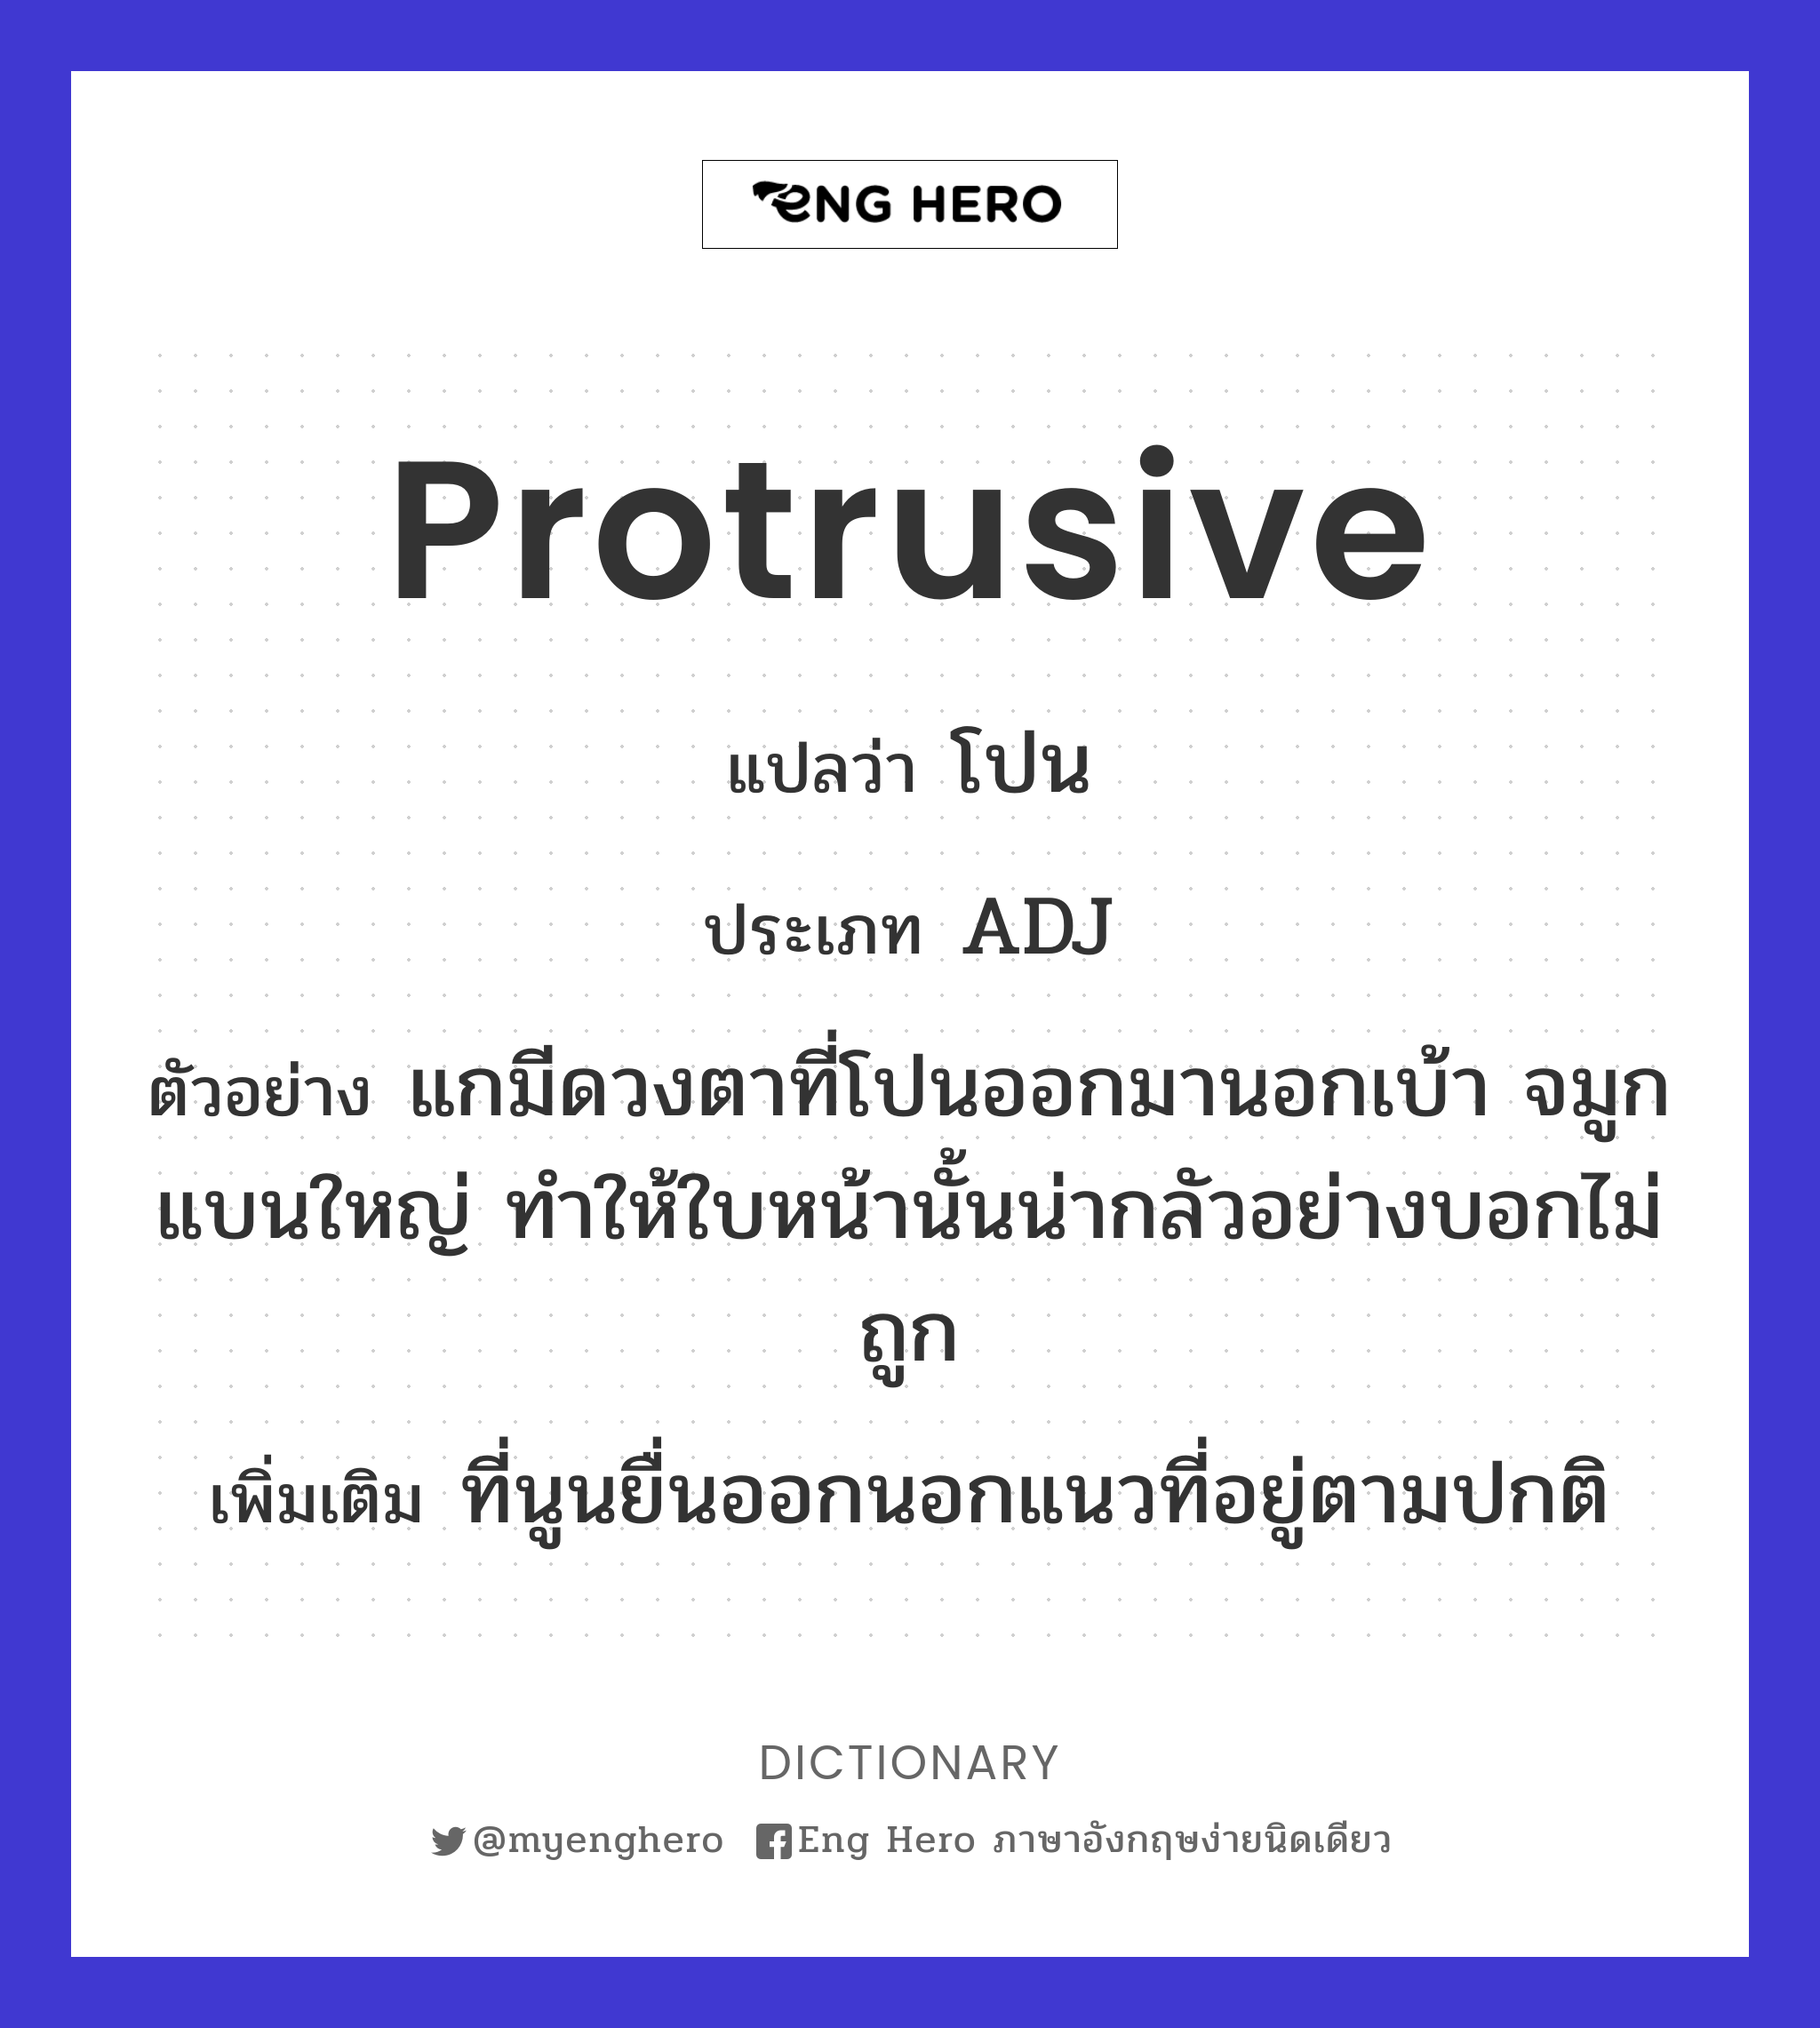 protrusive